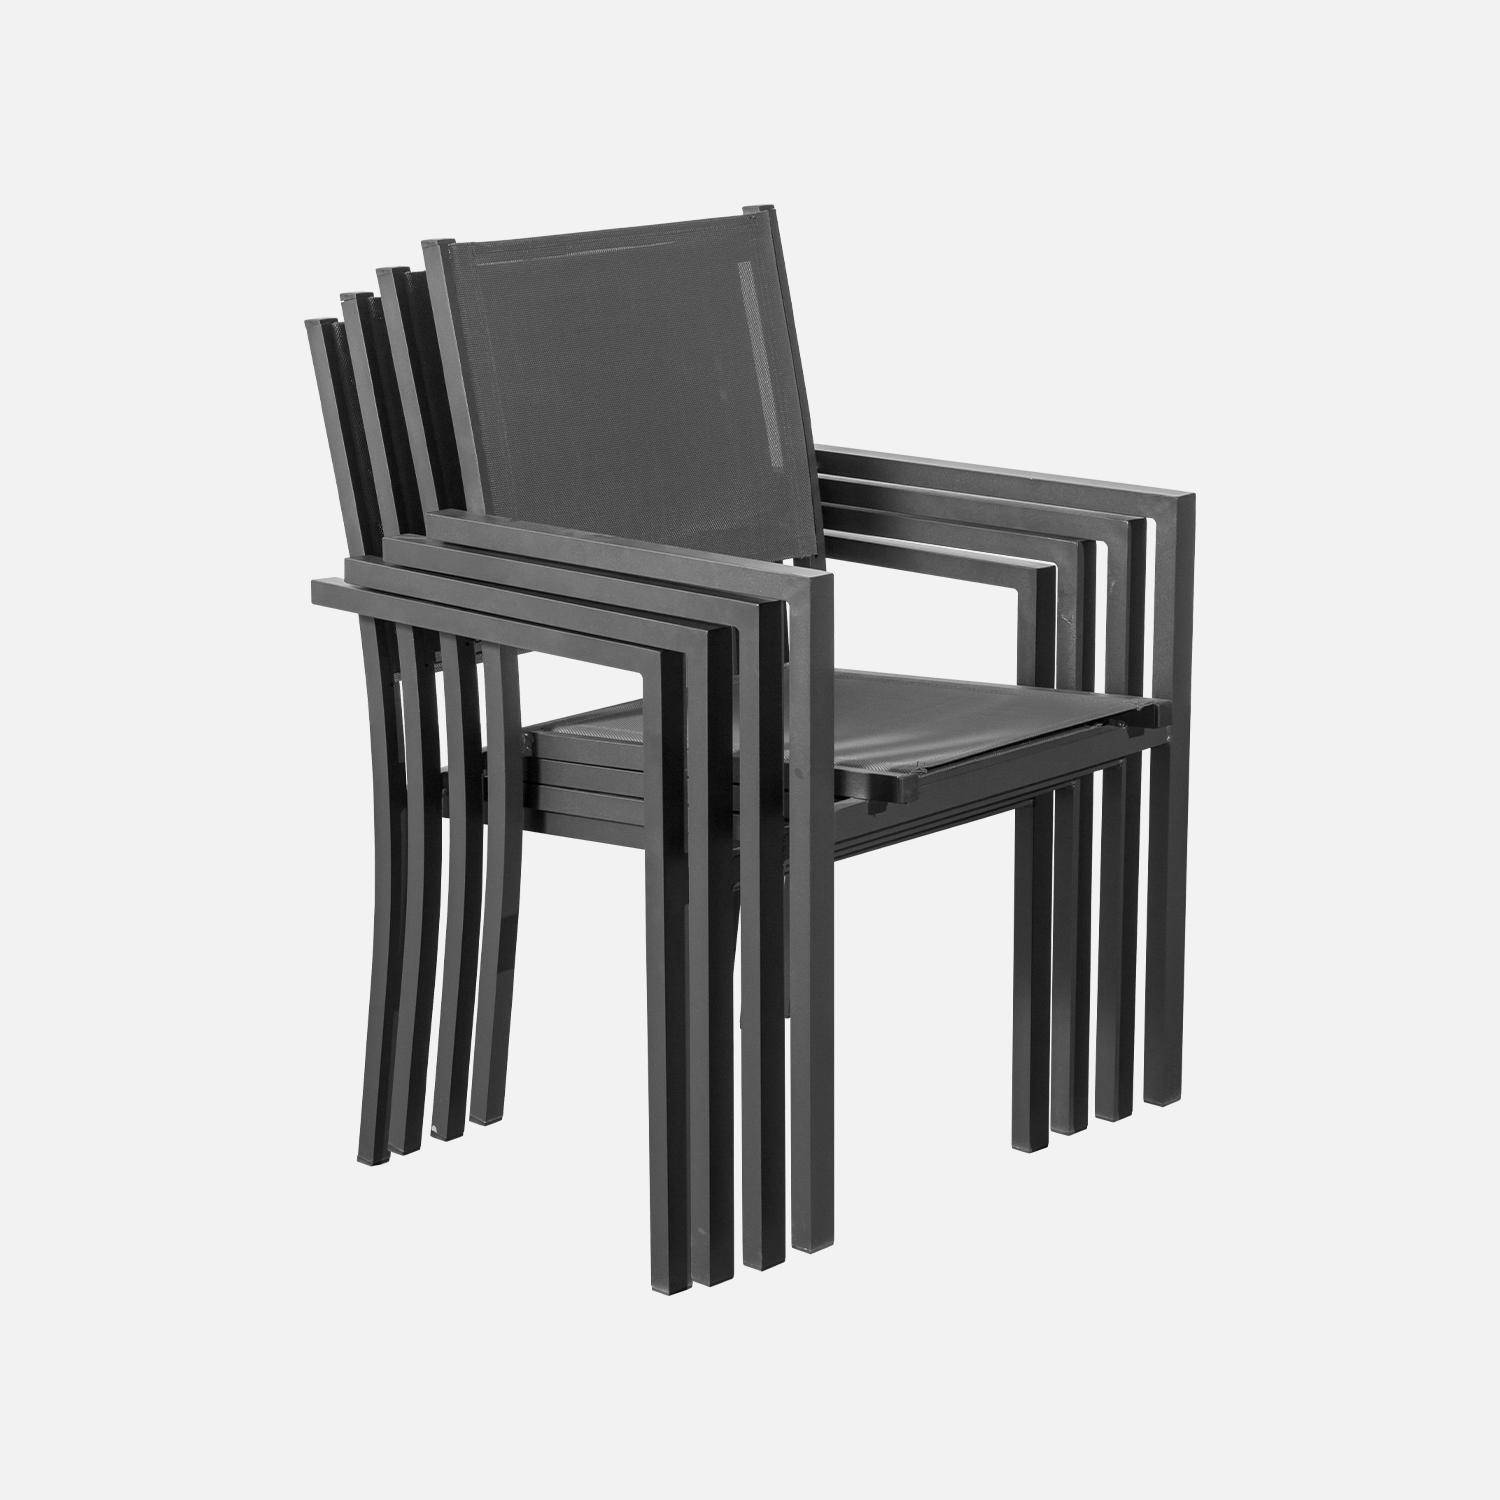 Salon de jardin en aluminium et textilène - Capua 180cm - Anthracite, gris - 8 places - 1 grande table rectangulaire, 8 fauteuils empilables Photo6